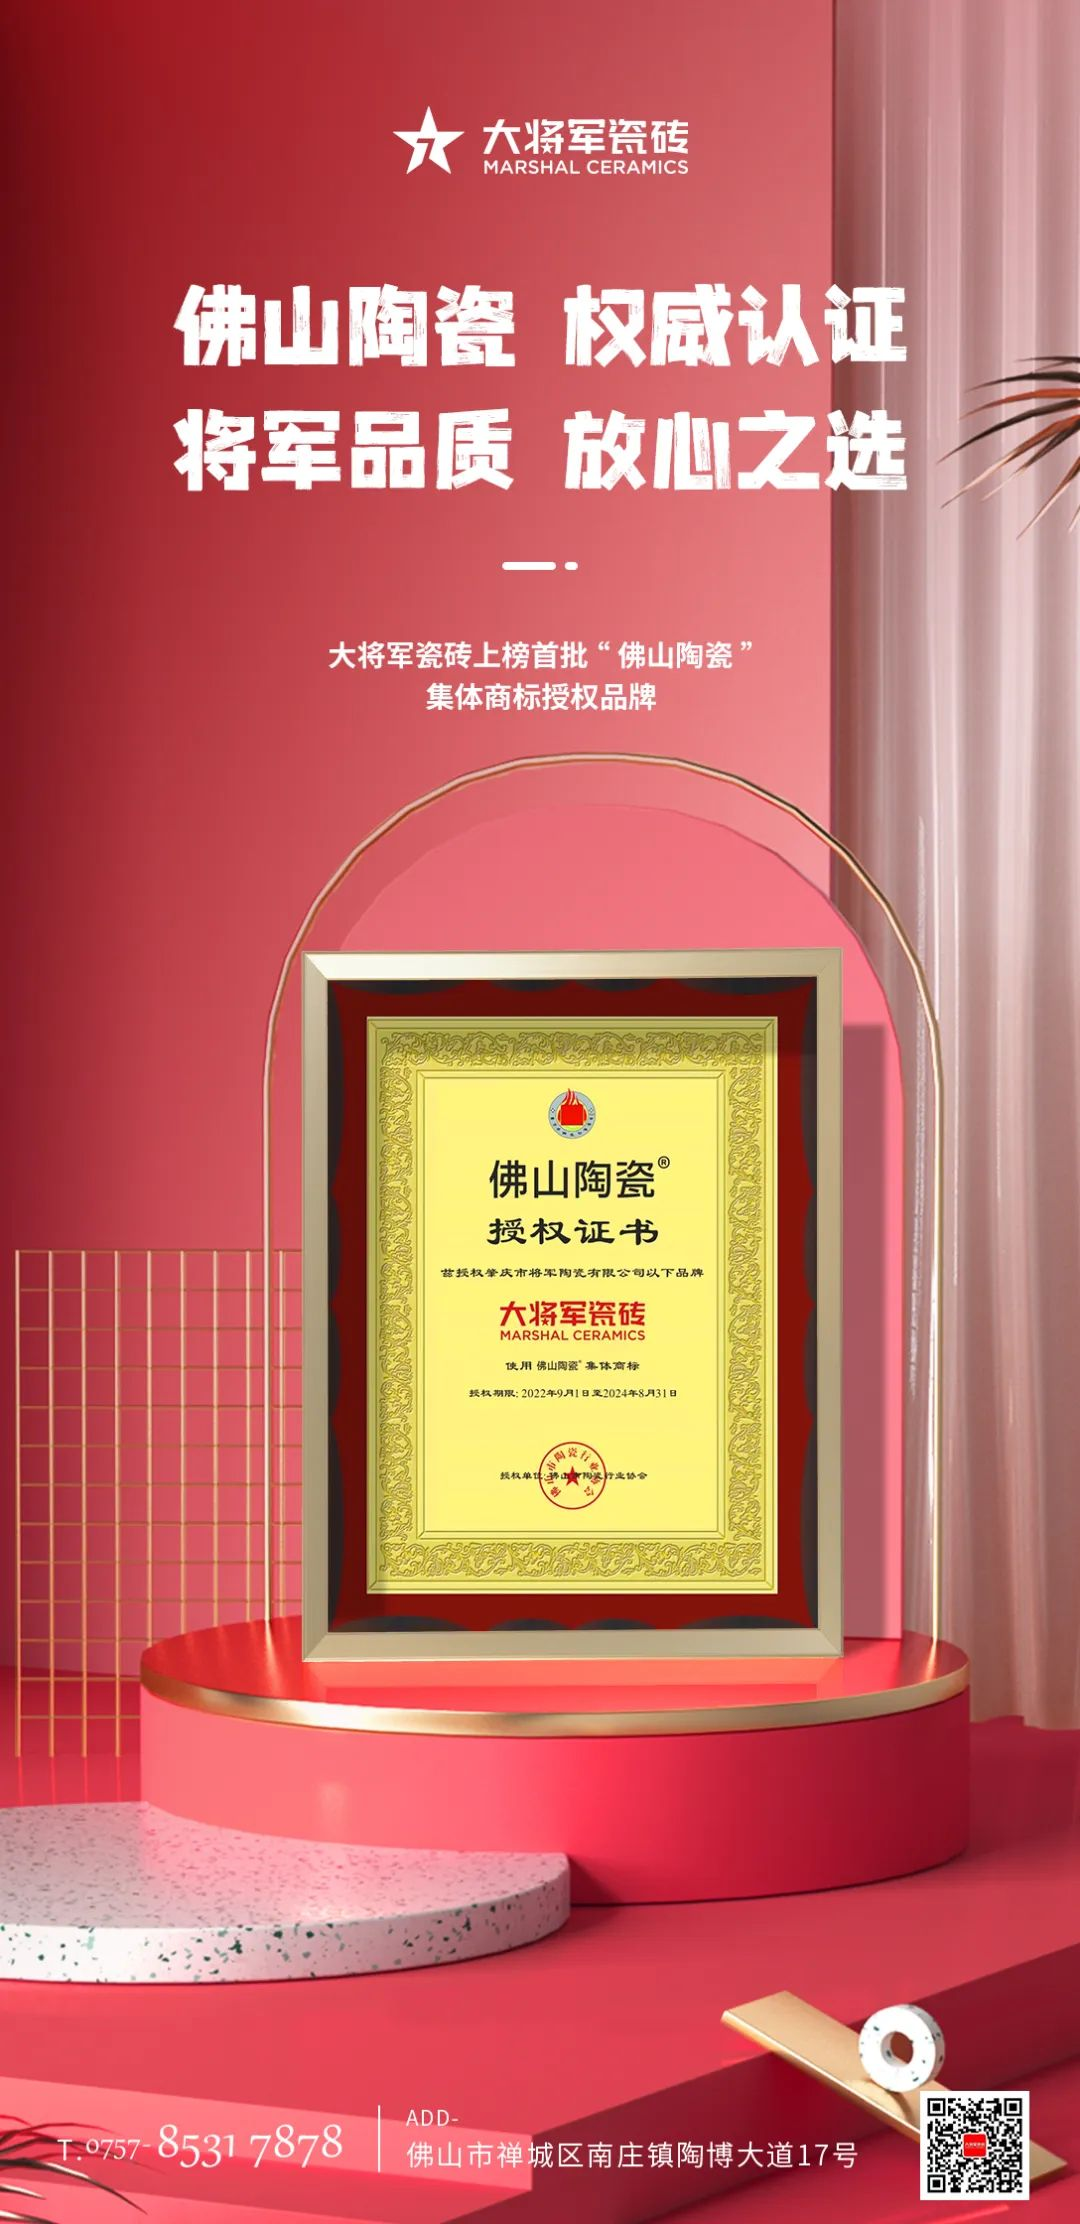 权威认证，品质保障 | bob官方体育
上榜首批“佛山陶瓷”集体商标授权品牌(图3)